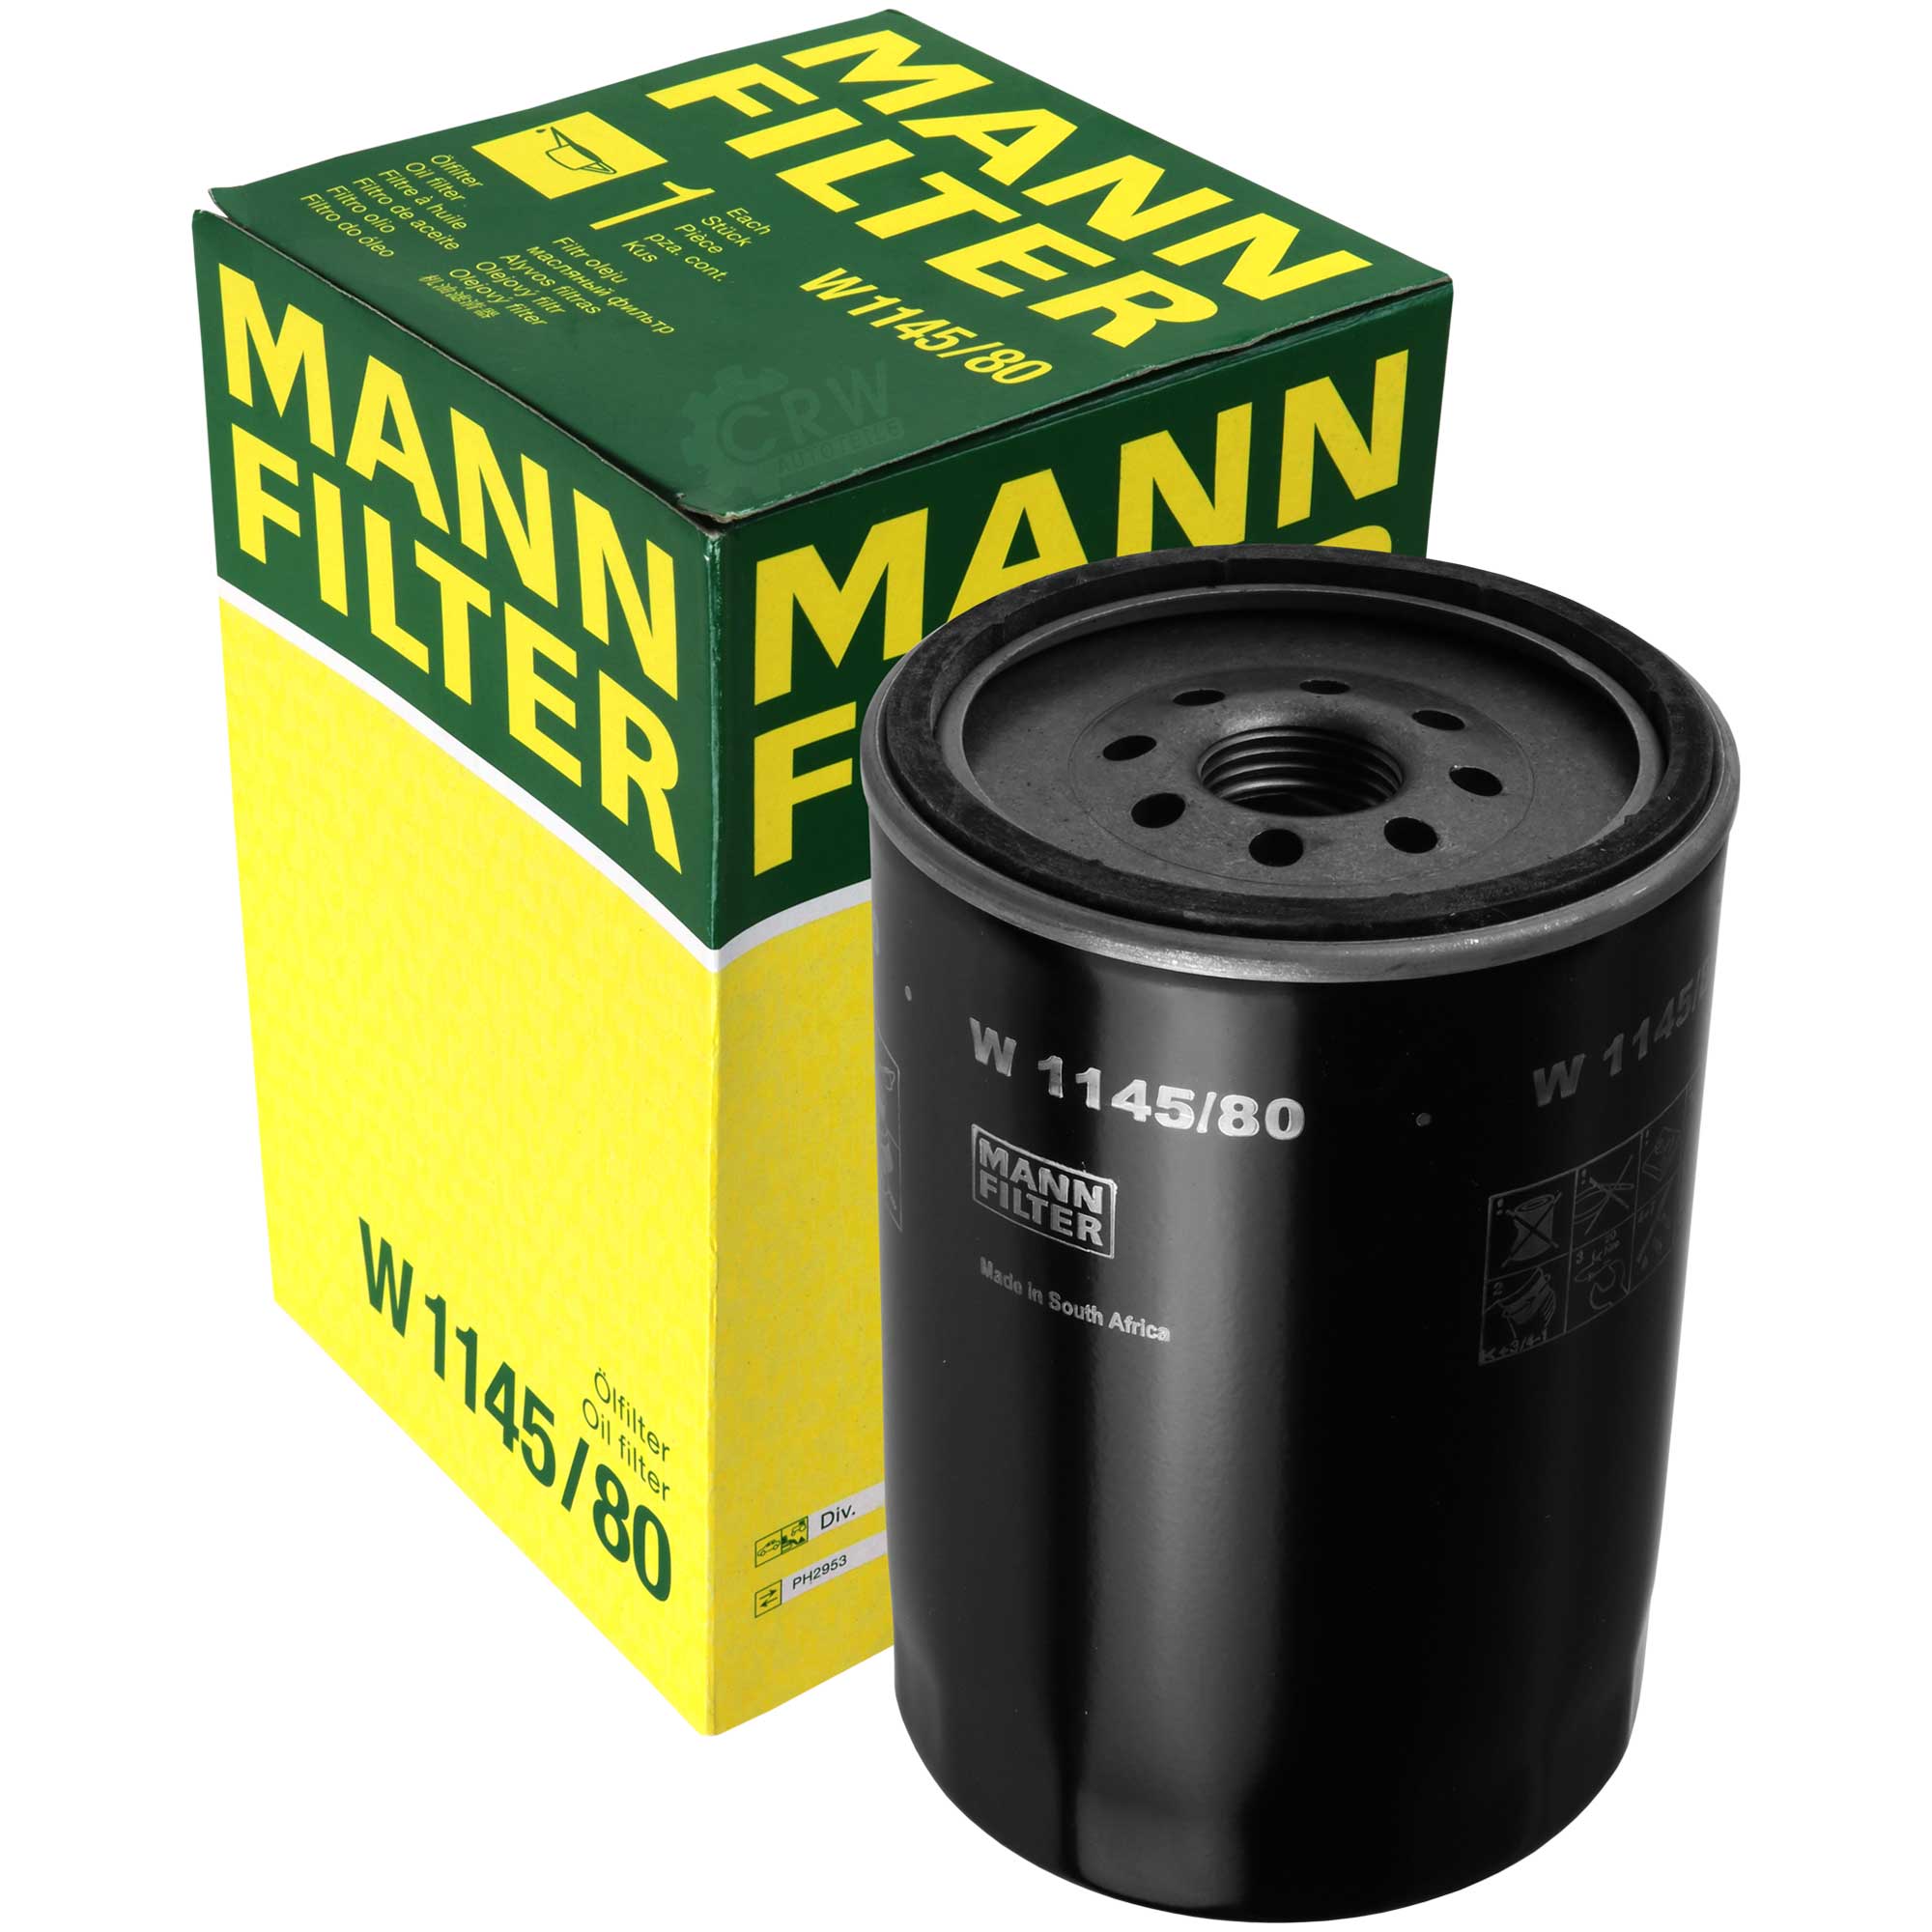 MANN-FILTER Ölfilter W 1145/80 Oil Filter